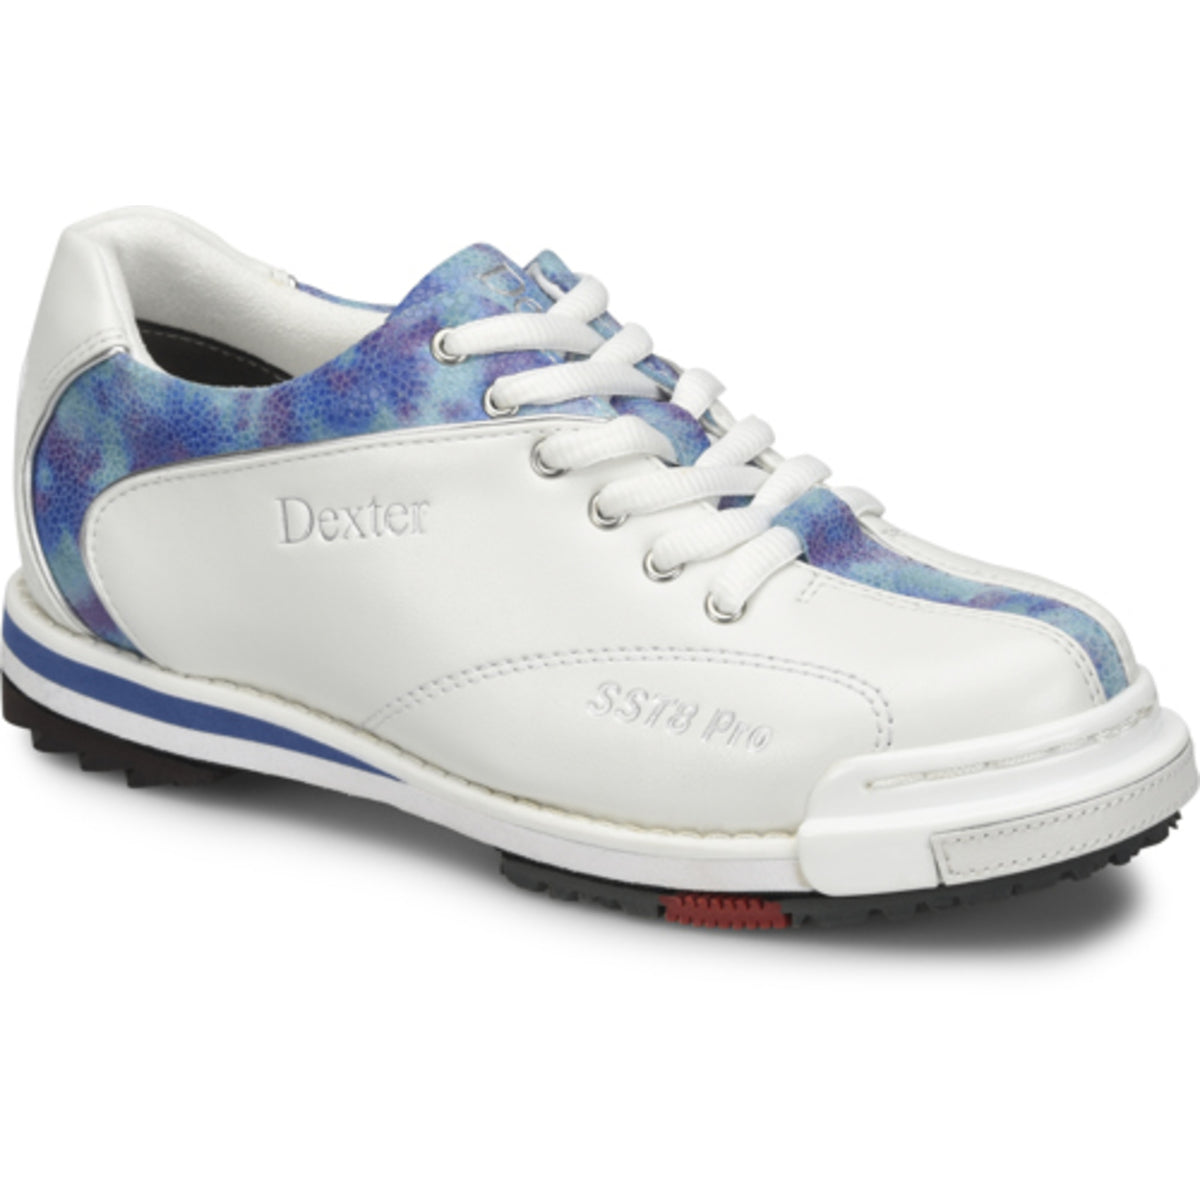 Sst 8 Pro White/ Blue Tie Dye Wide Shoes